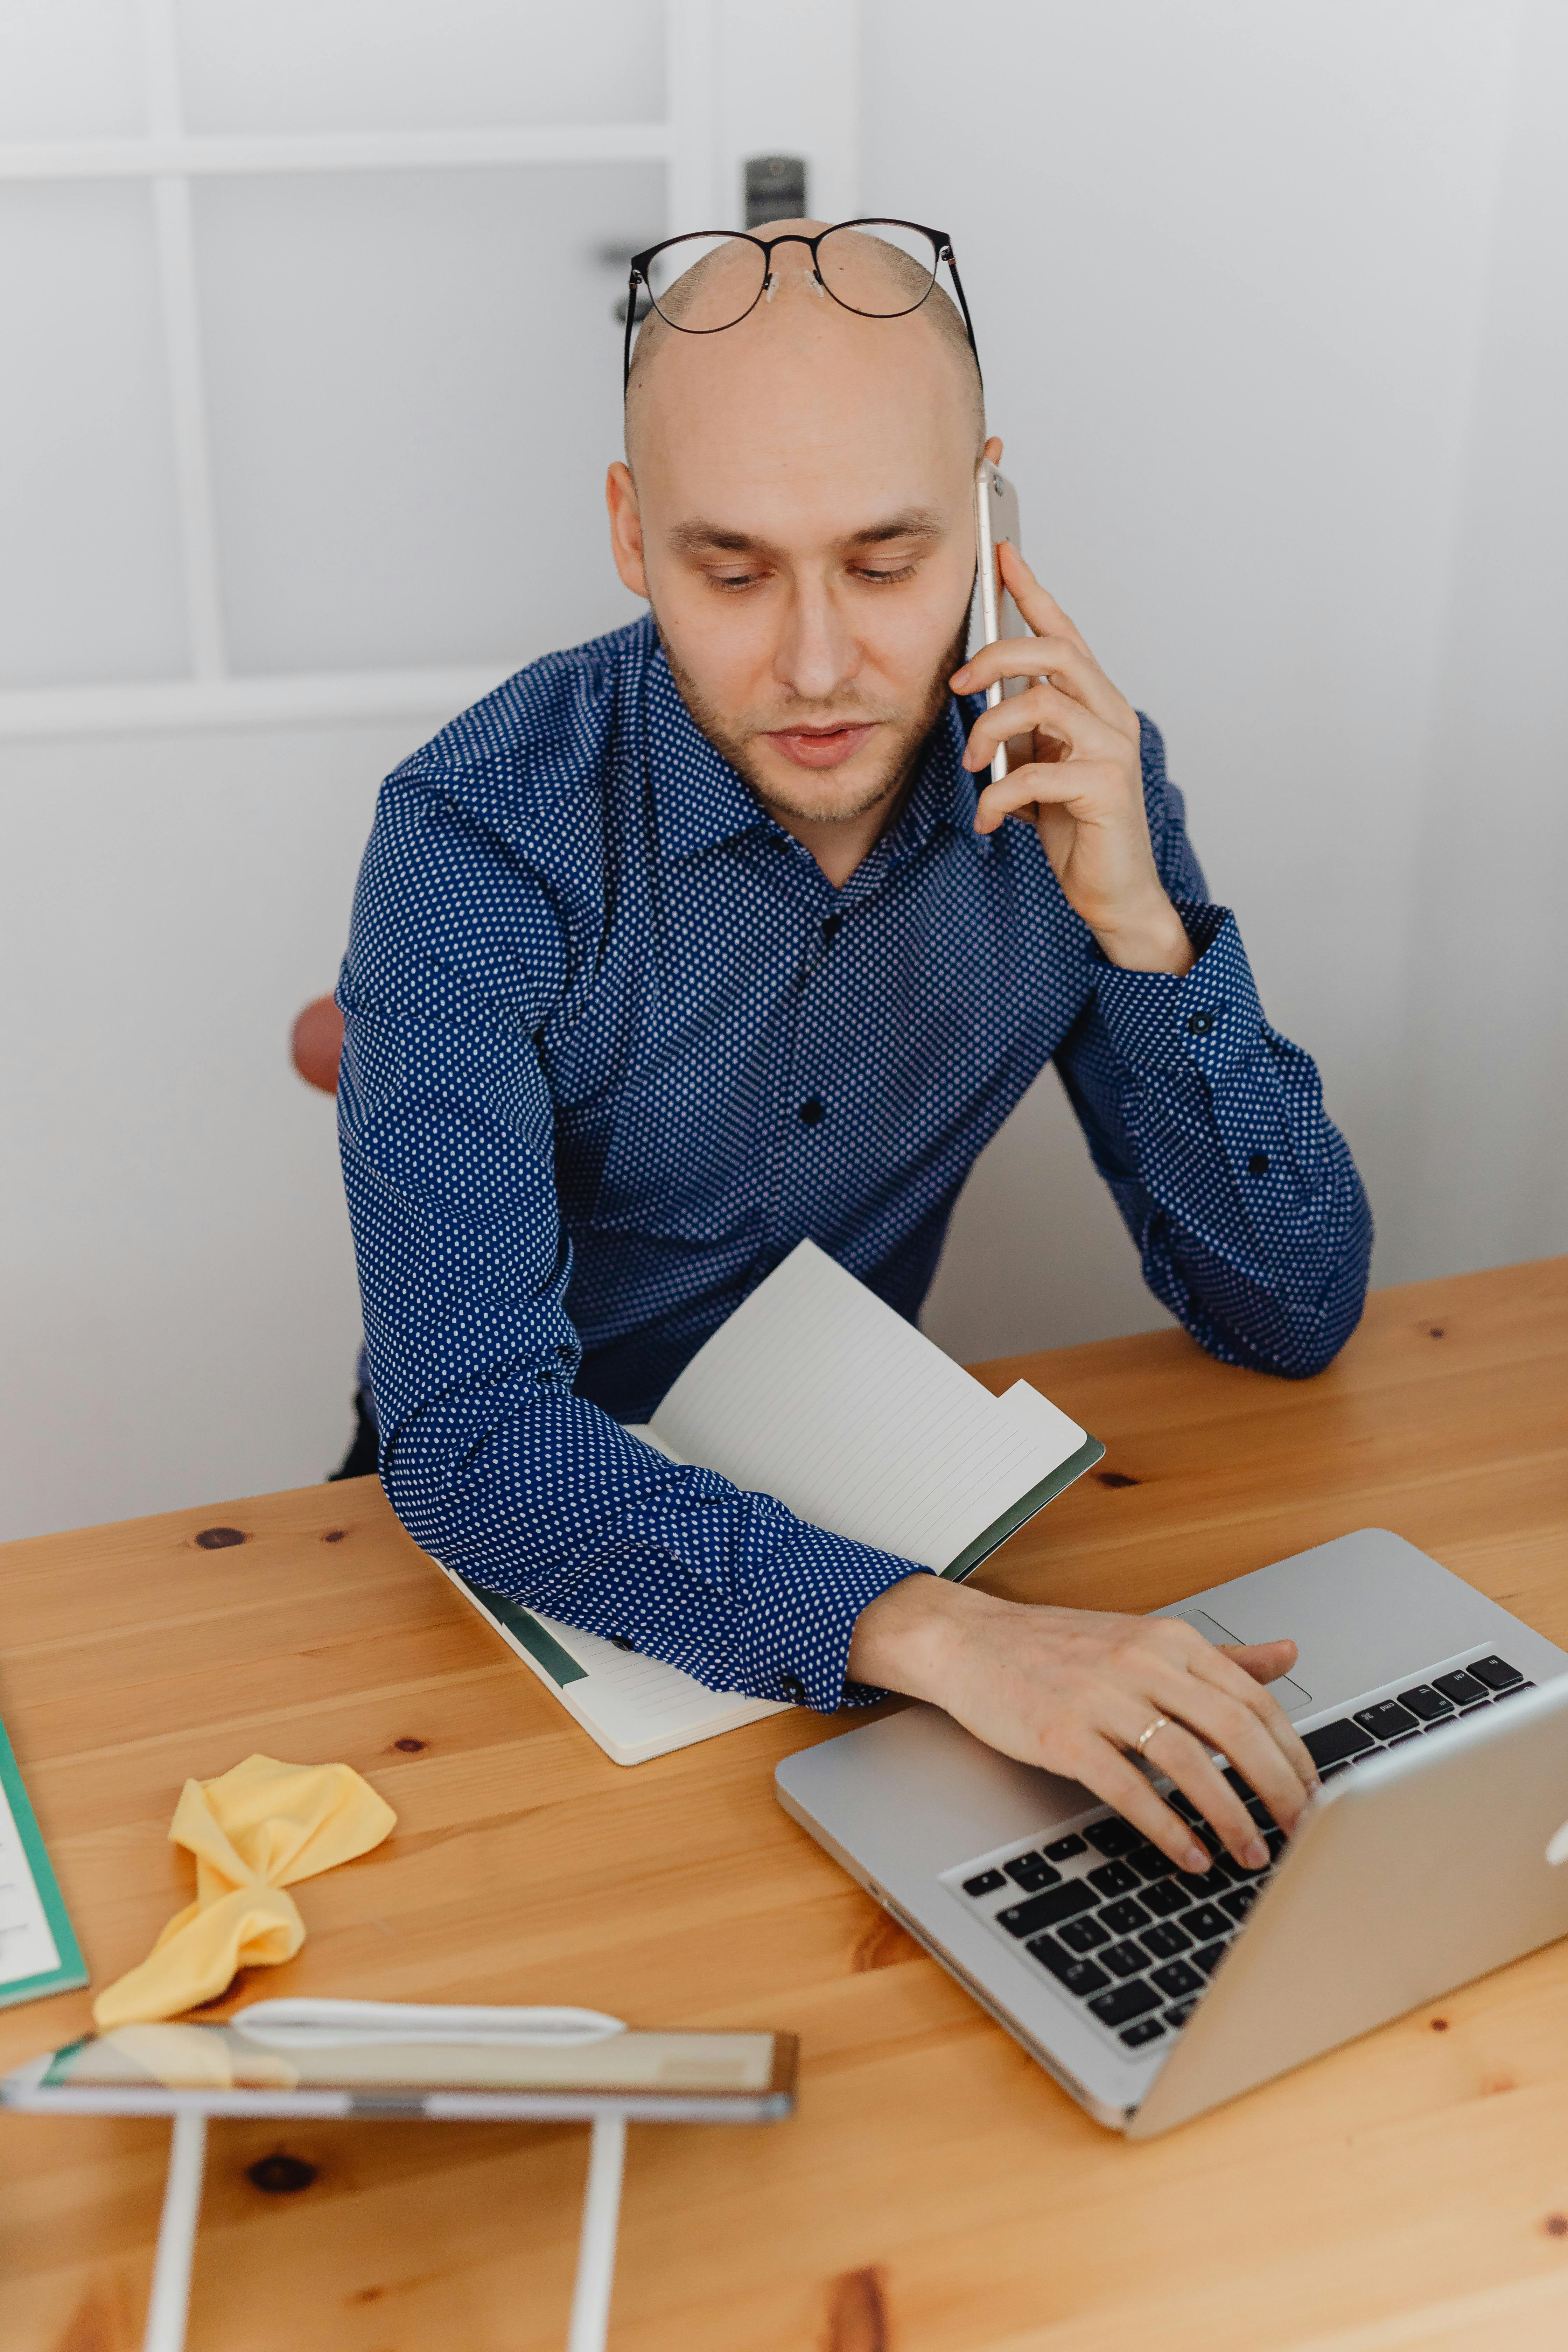 Un homme habillé de façon formelle en train de téléphoner tout en travaillant sur un ordinateur portable | Source : Pexels